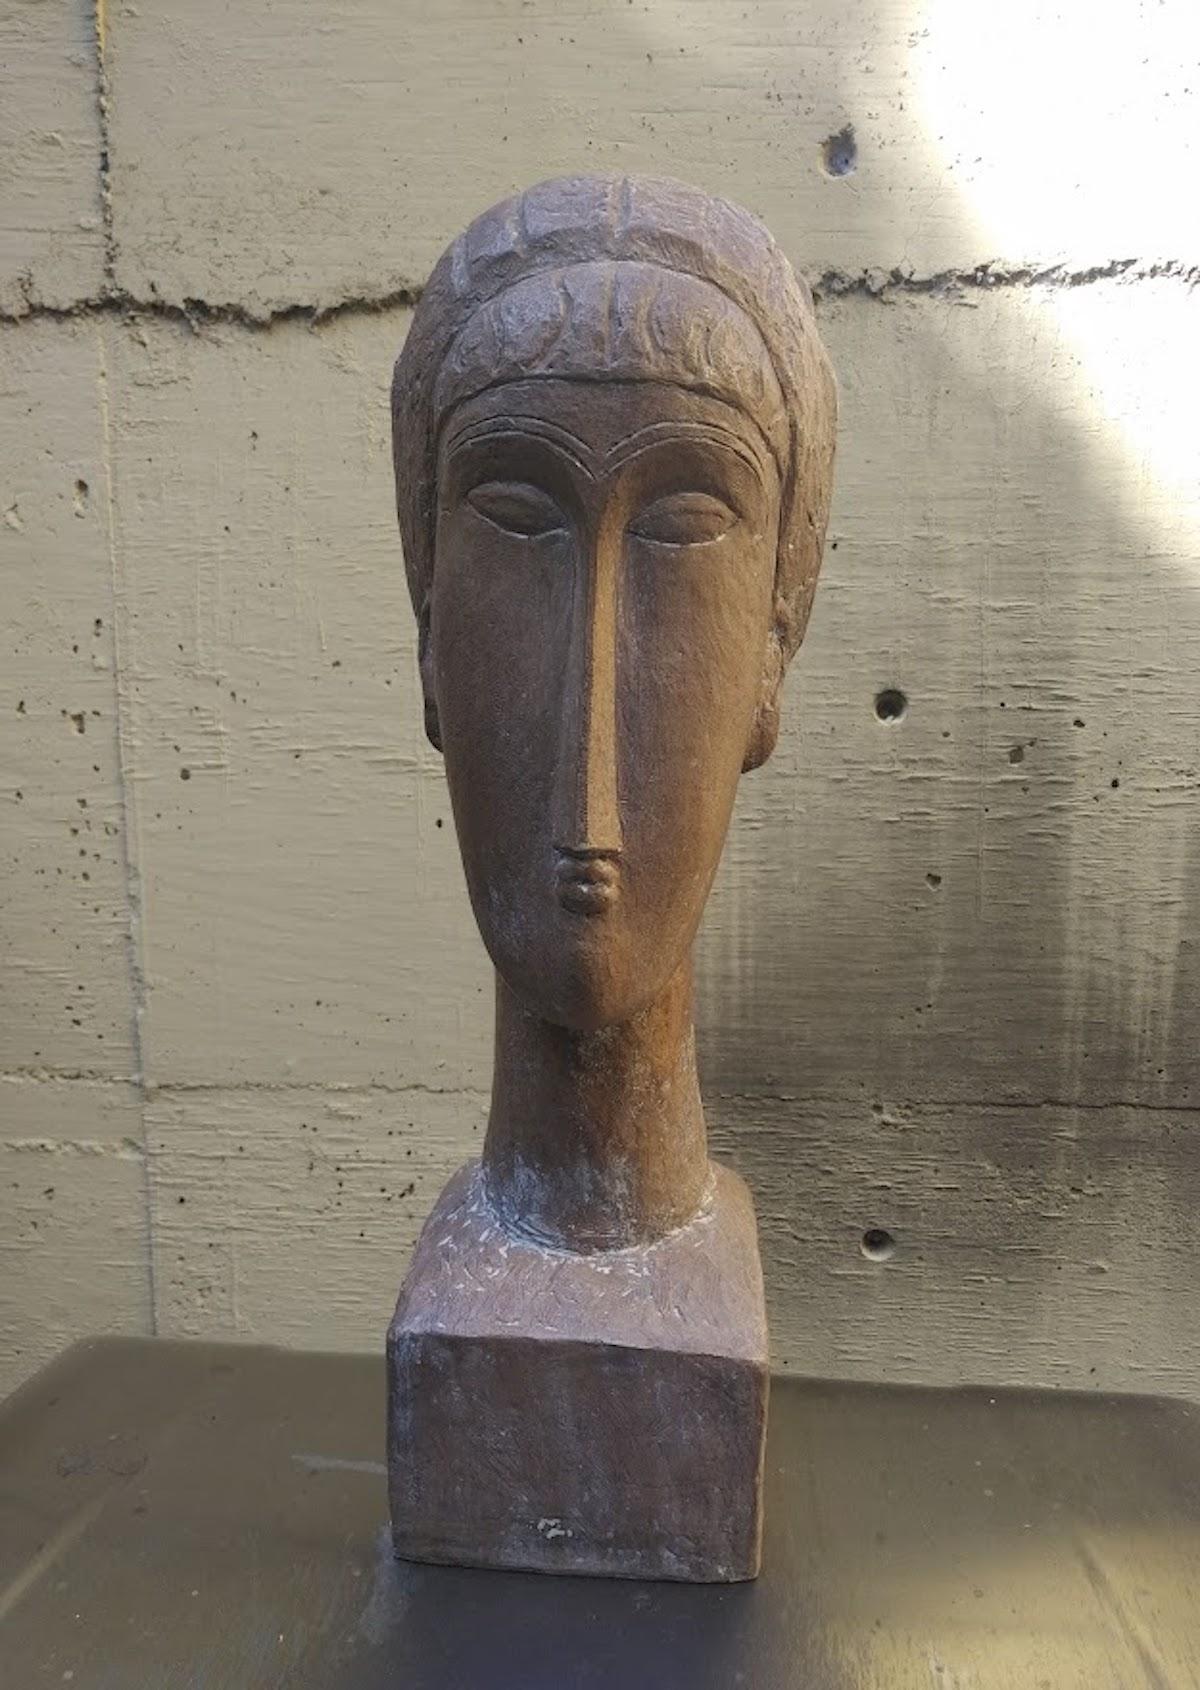 Austin Productions 1961, nach Modigliani, Skulptur Tete de Femme, limitierte Auflage. – Sculpture von Amedeo Modigliani